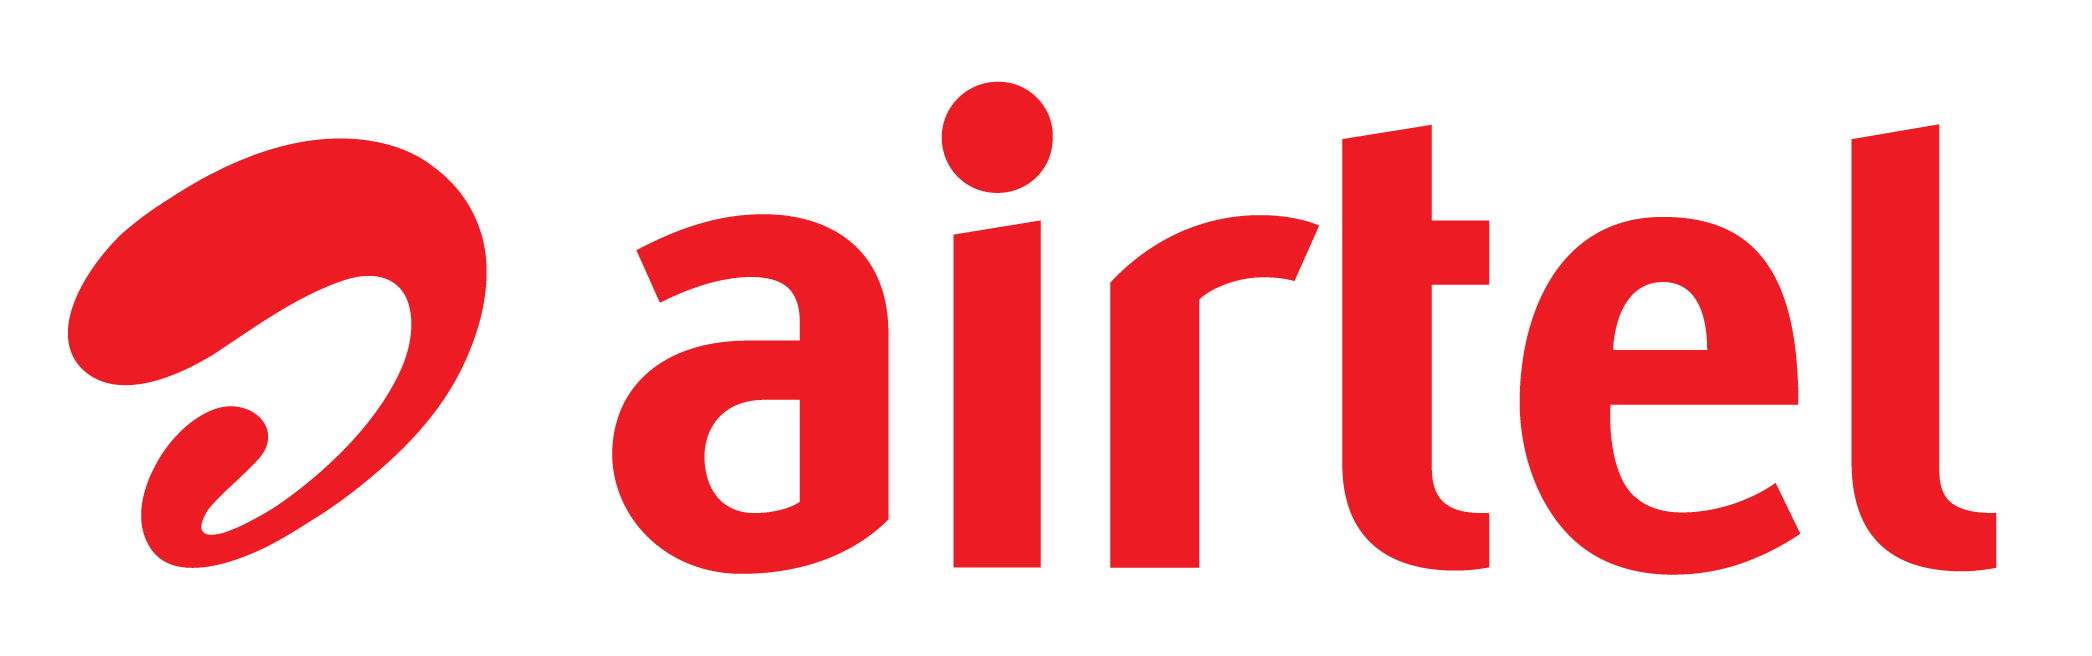 Airtime Logo